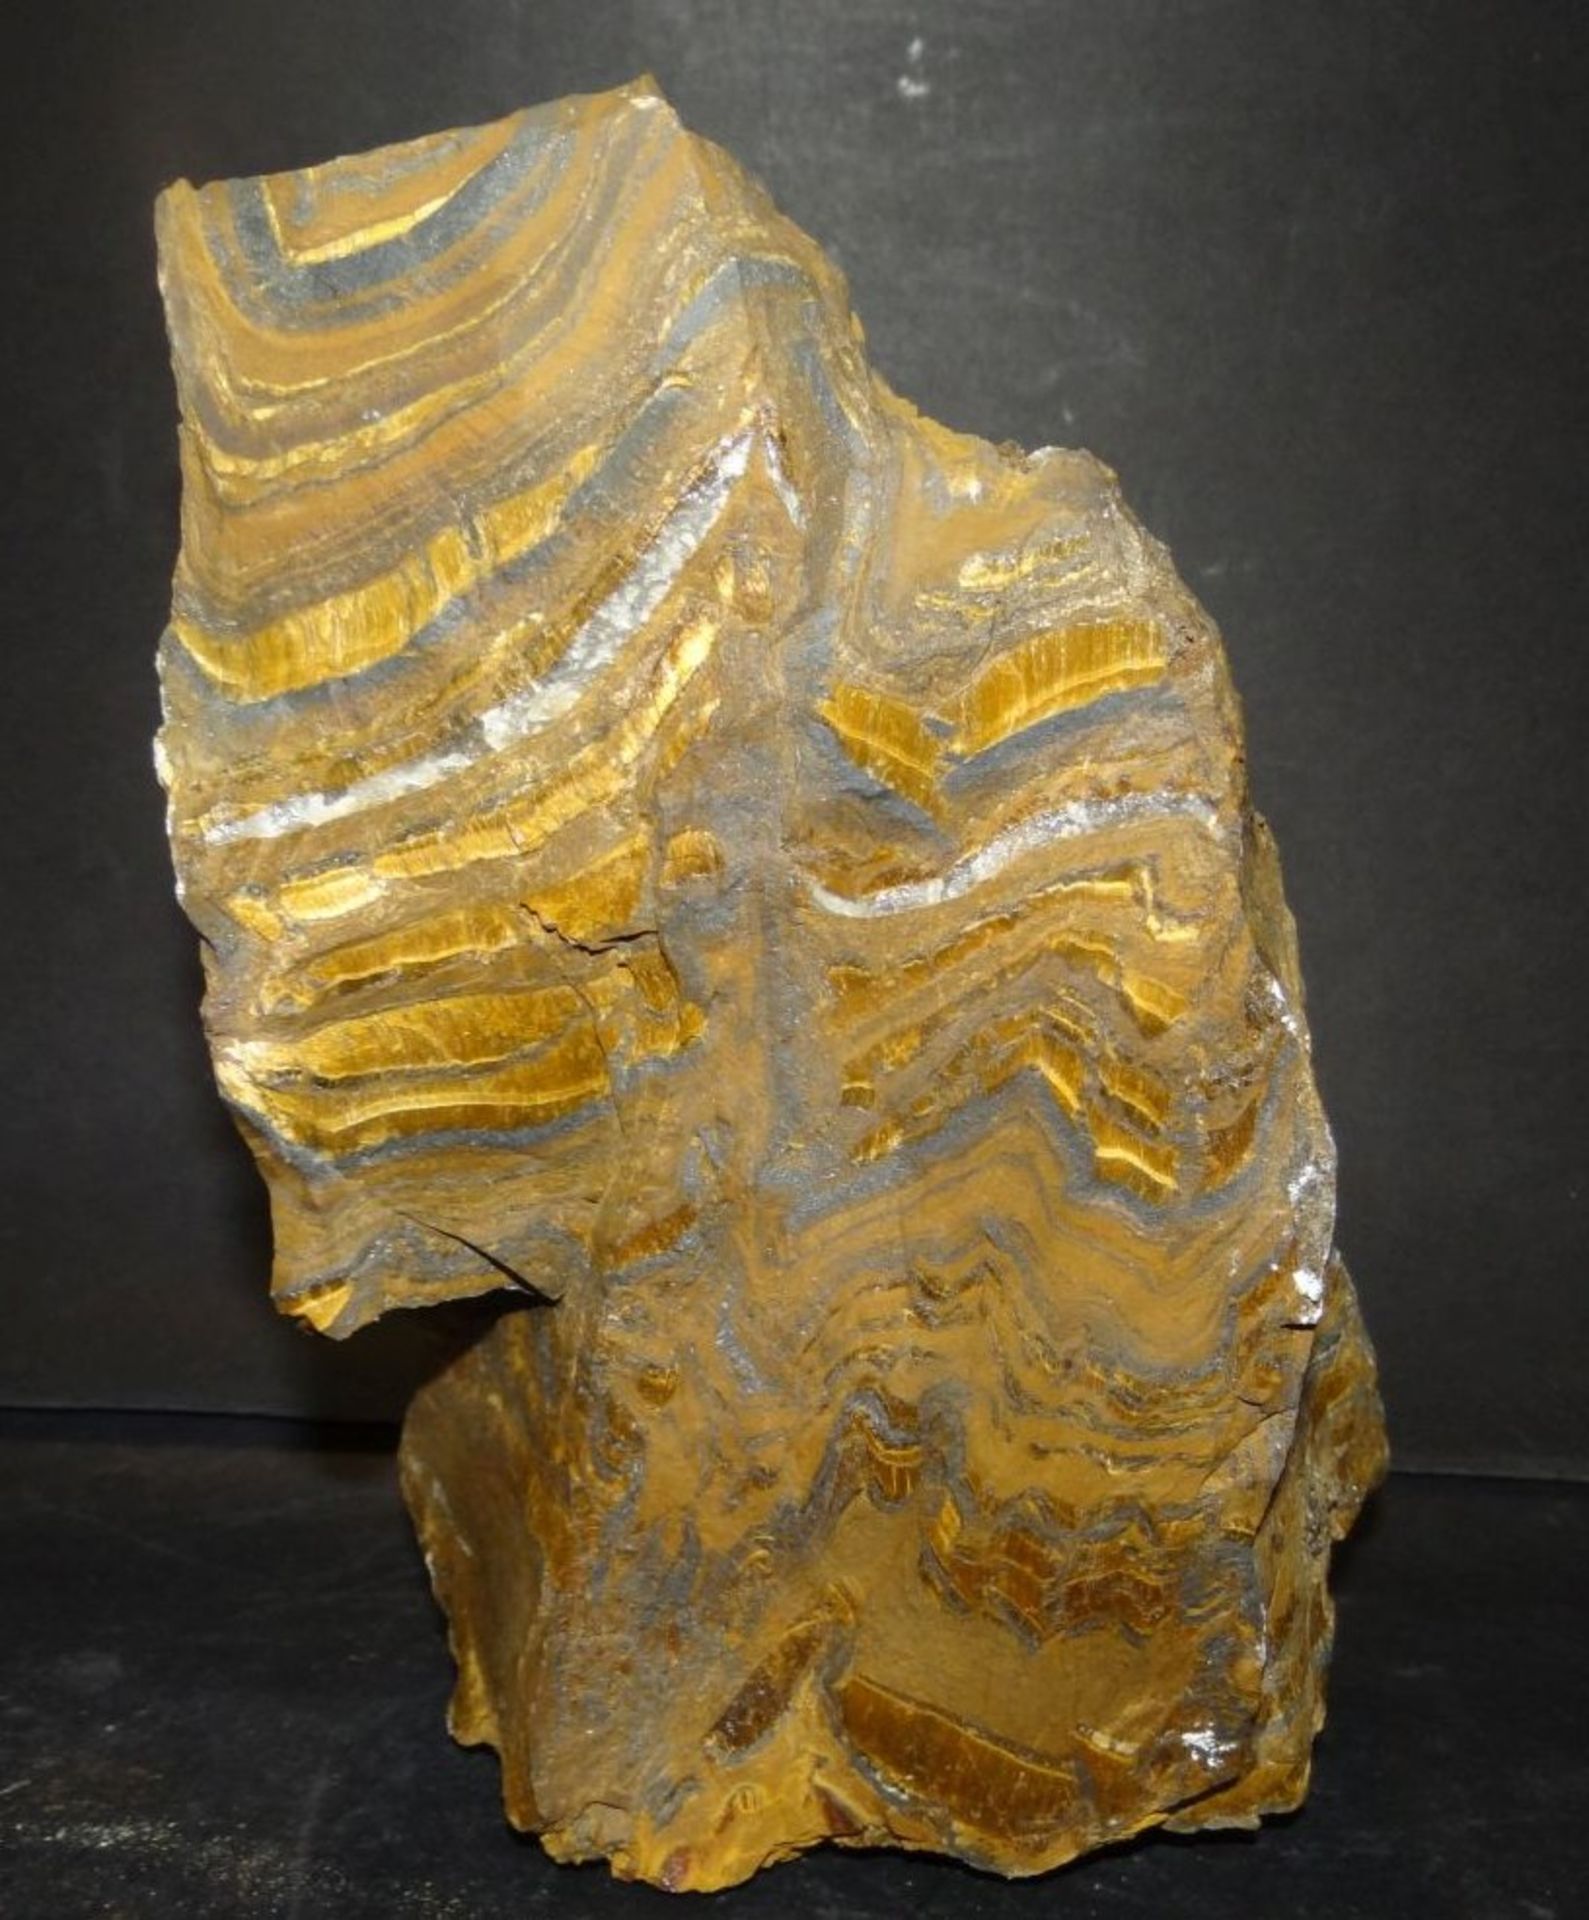 grosses Stück Mineral?, 19x13 cm, 2,5 k- - -22.61 % buyer's premium on the hammer priceVAT margin - Bild 2 aus 3